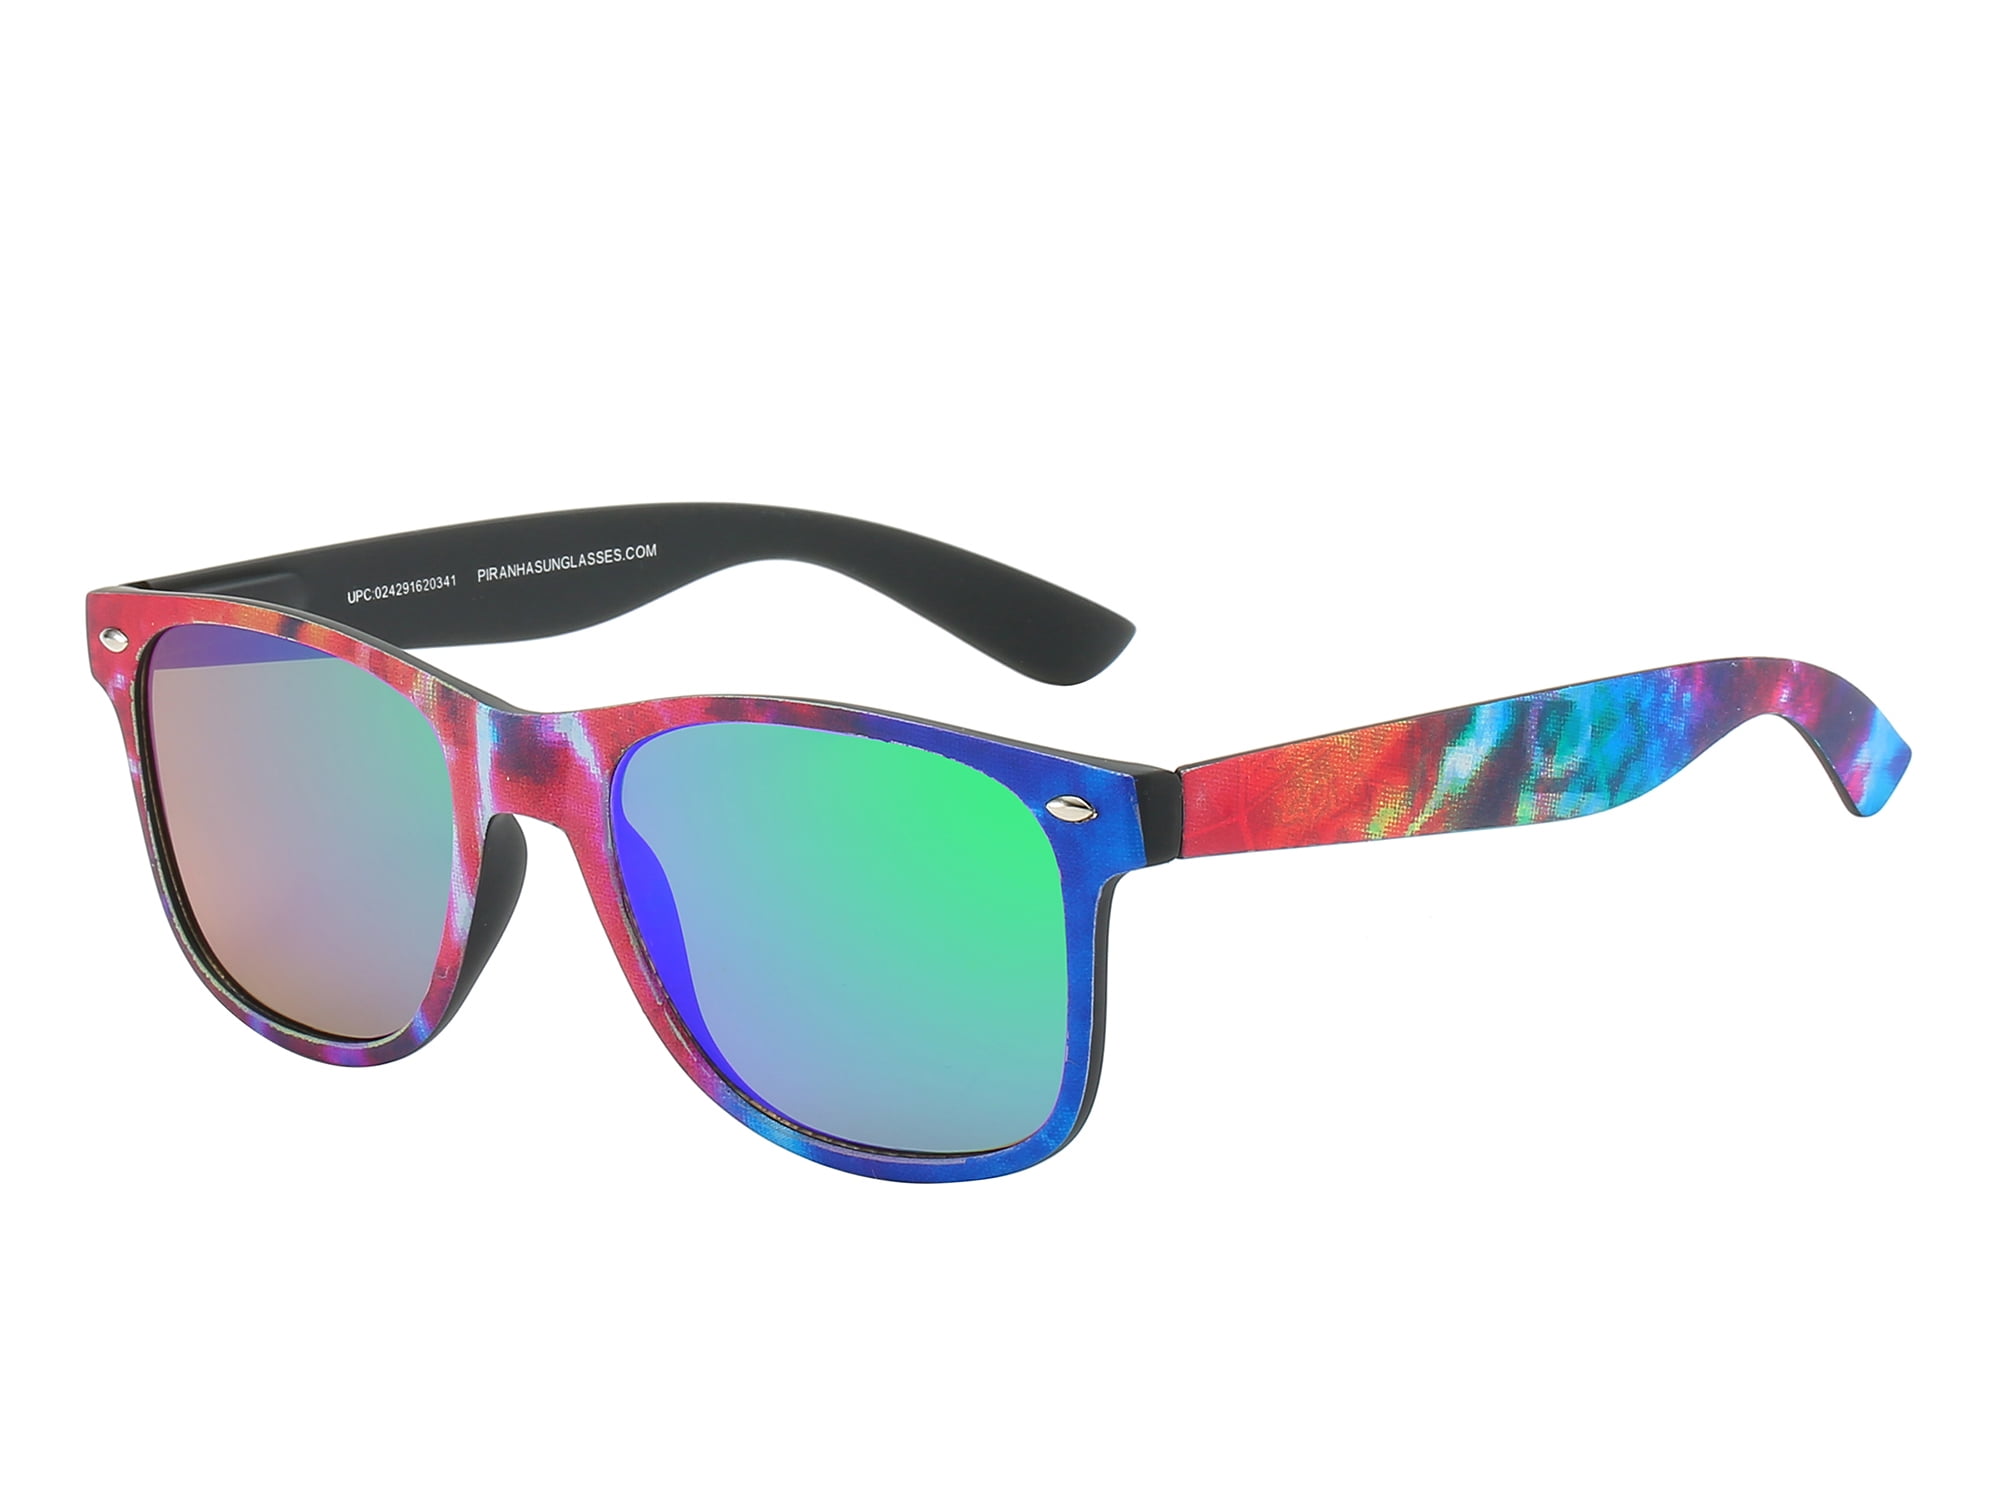 2020 New Men /& Women/'s Retro Sunglasses Unisex Matte Frame Car era Glasses+Box